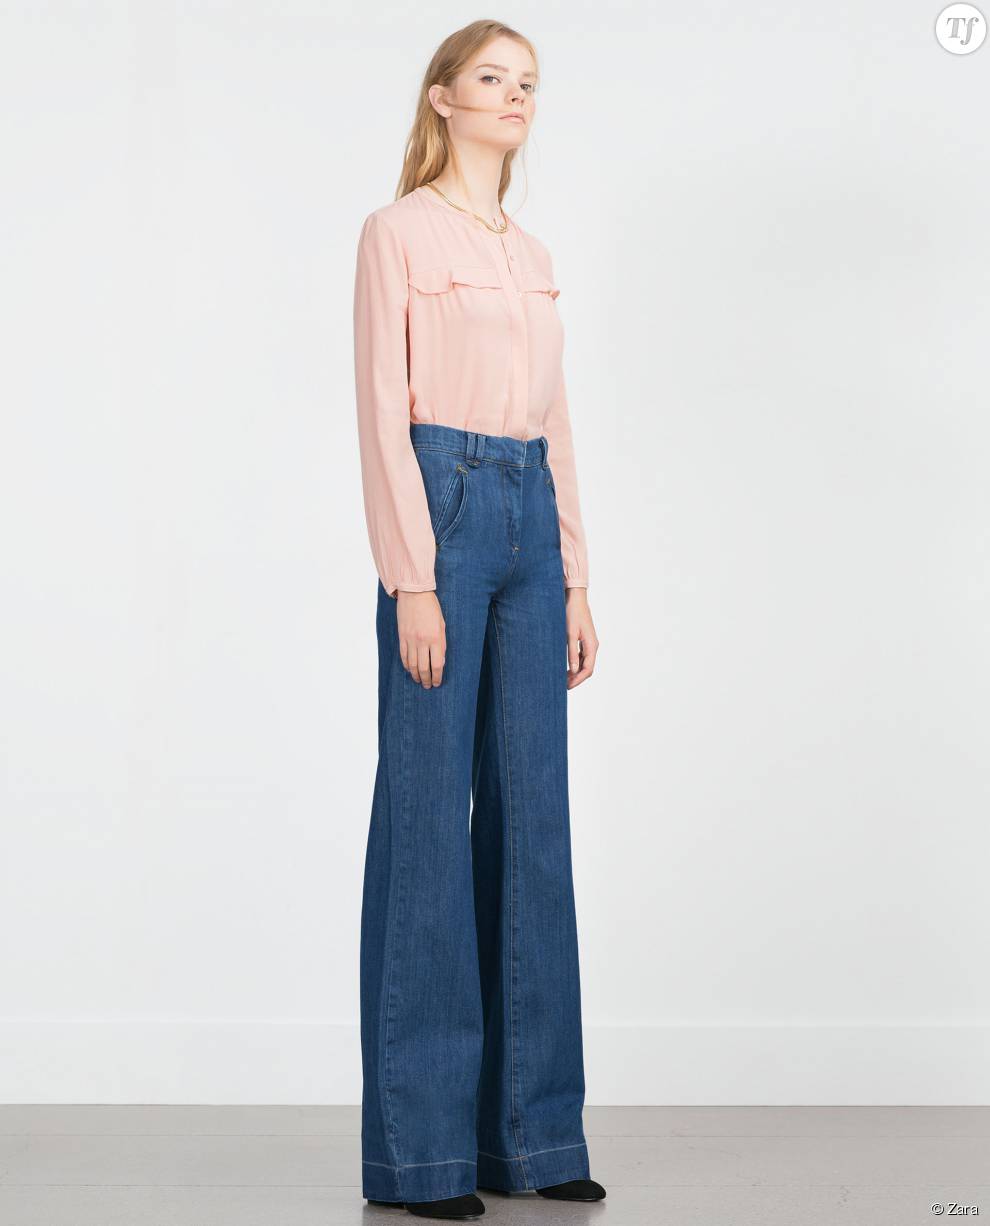 Patte d&#039;eph en jean,  Zara 49.95 euros 